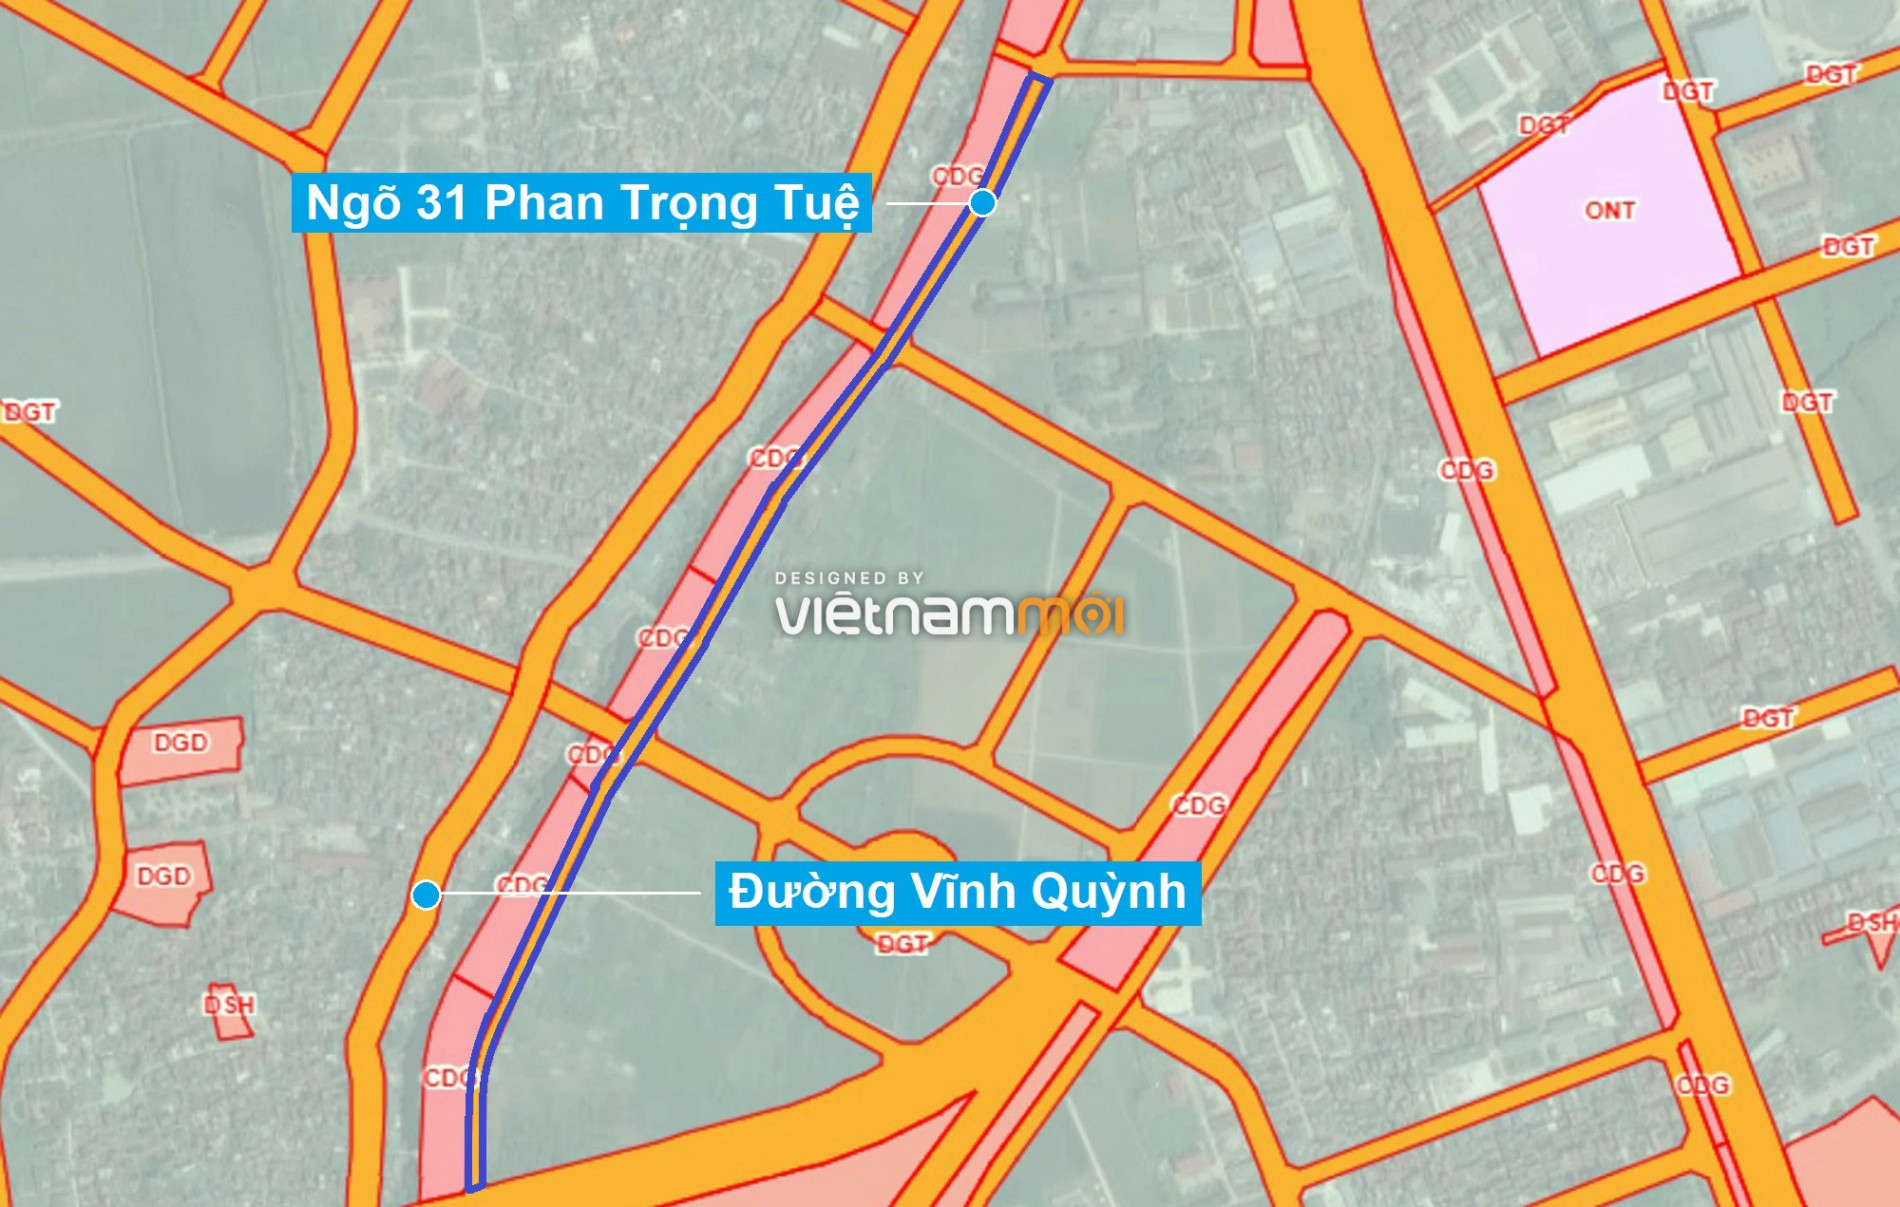 Những khu đất sắp thu hồi để mở đường ở xã Vĩnh Quỳnh, Thanh Trì, Hà Nội (phần 7) - Ảnh 8.